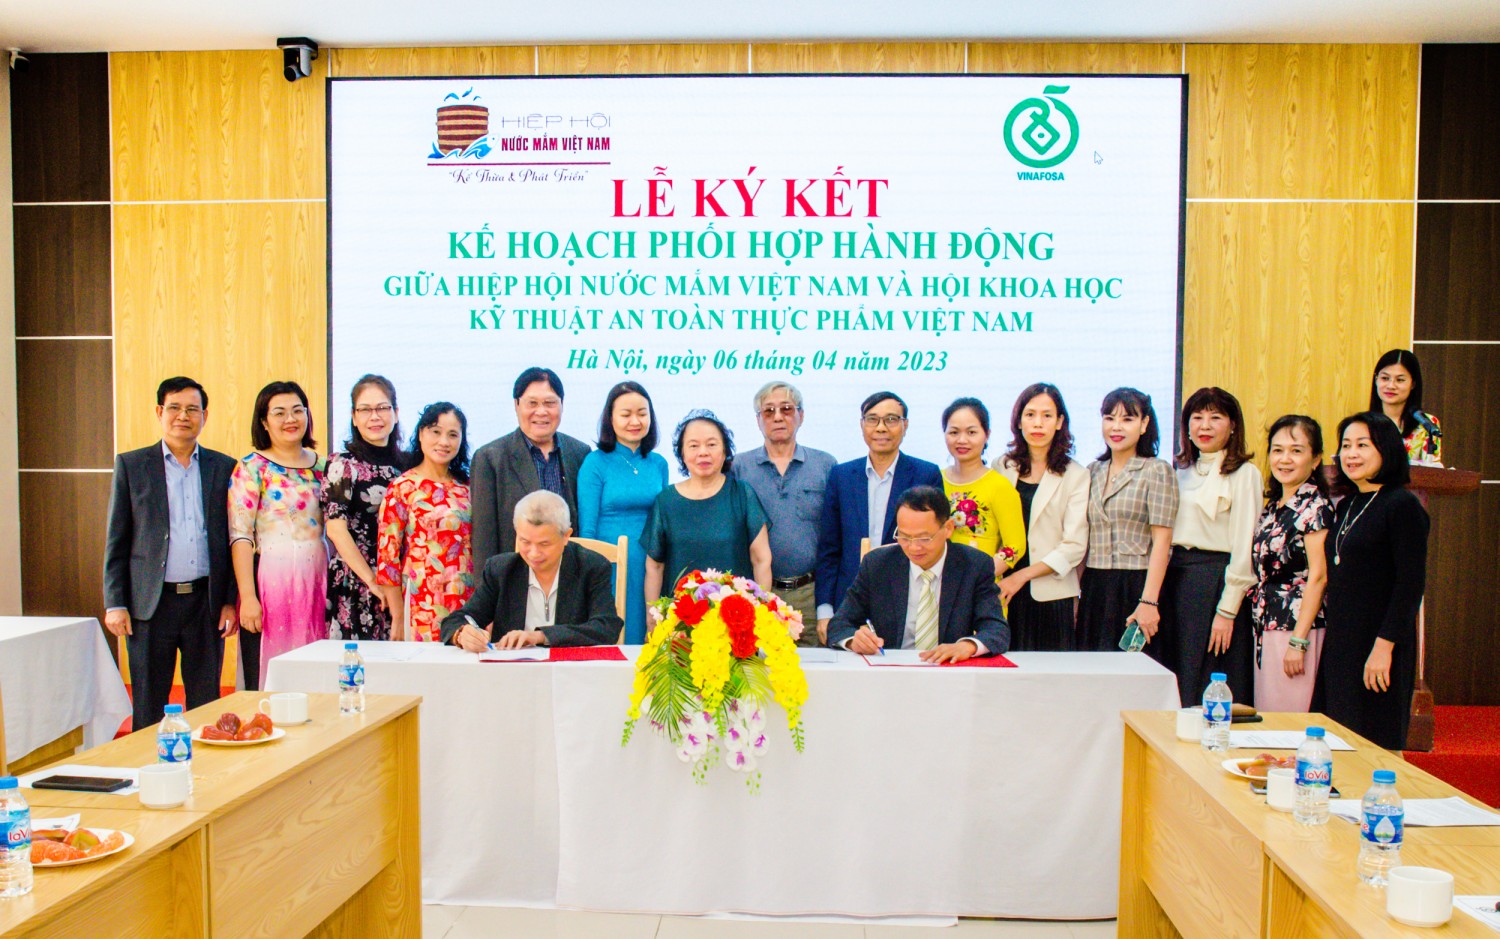 Lễ ký kết phối hợp giữa Hiệp hội Nước mắm Việt Nam và Hội Khoa học kỹ thuật an toàn thực phẩm Việt Nam. Ảnh: Hoàng Giang